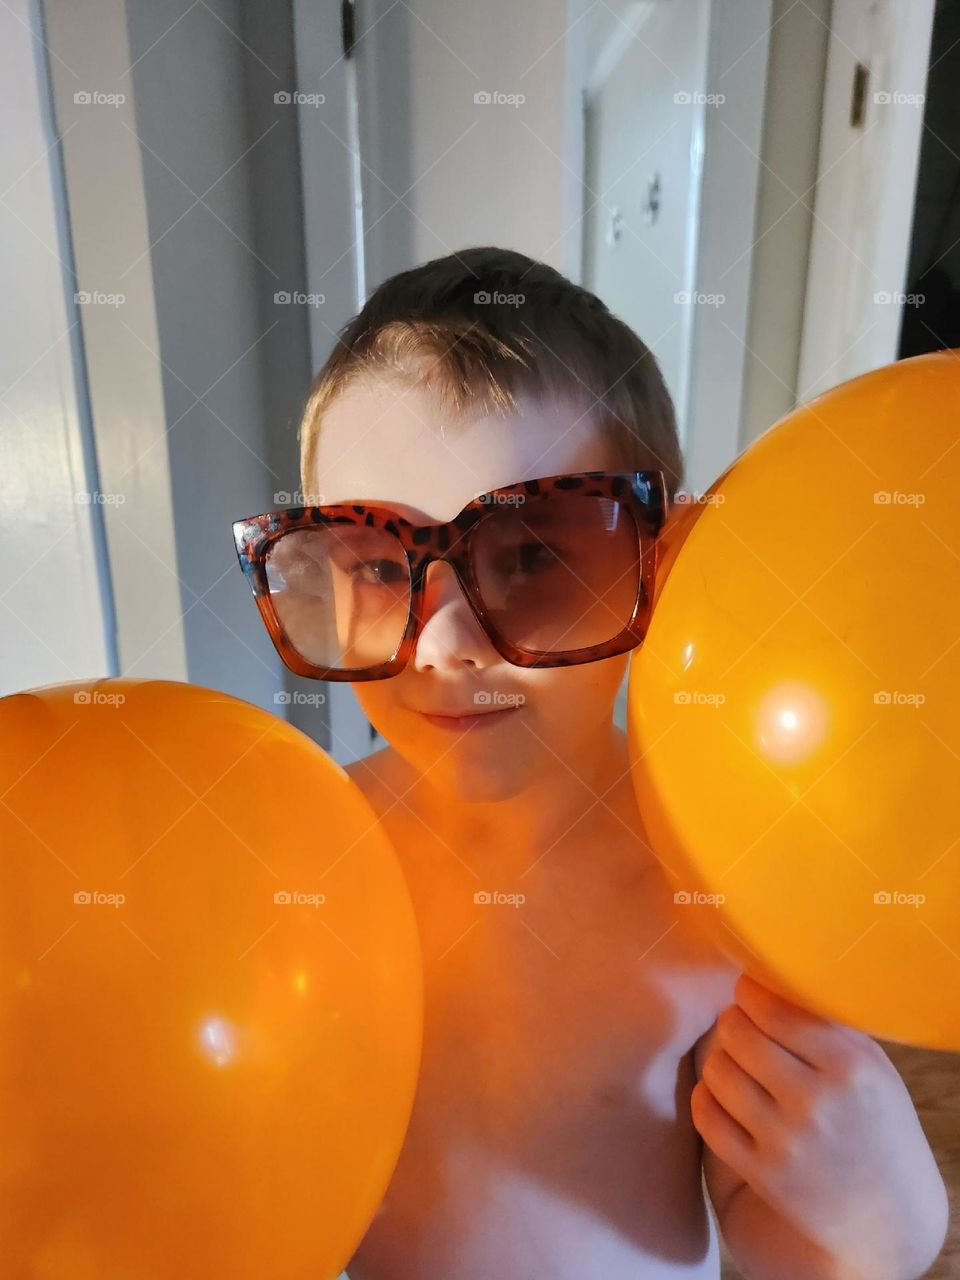 Balloons and shades